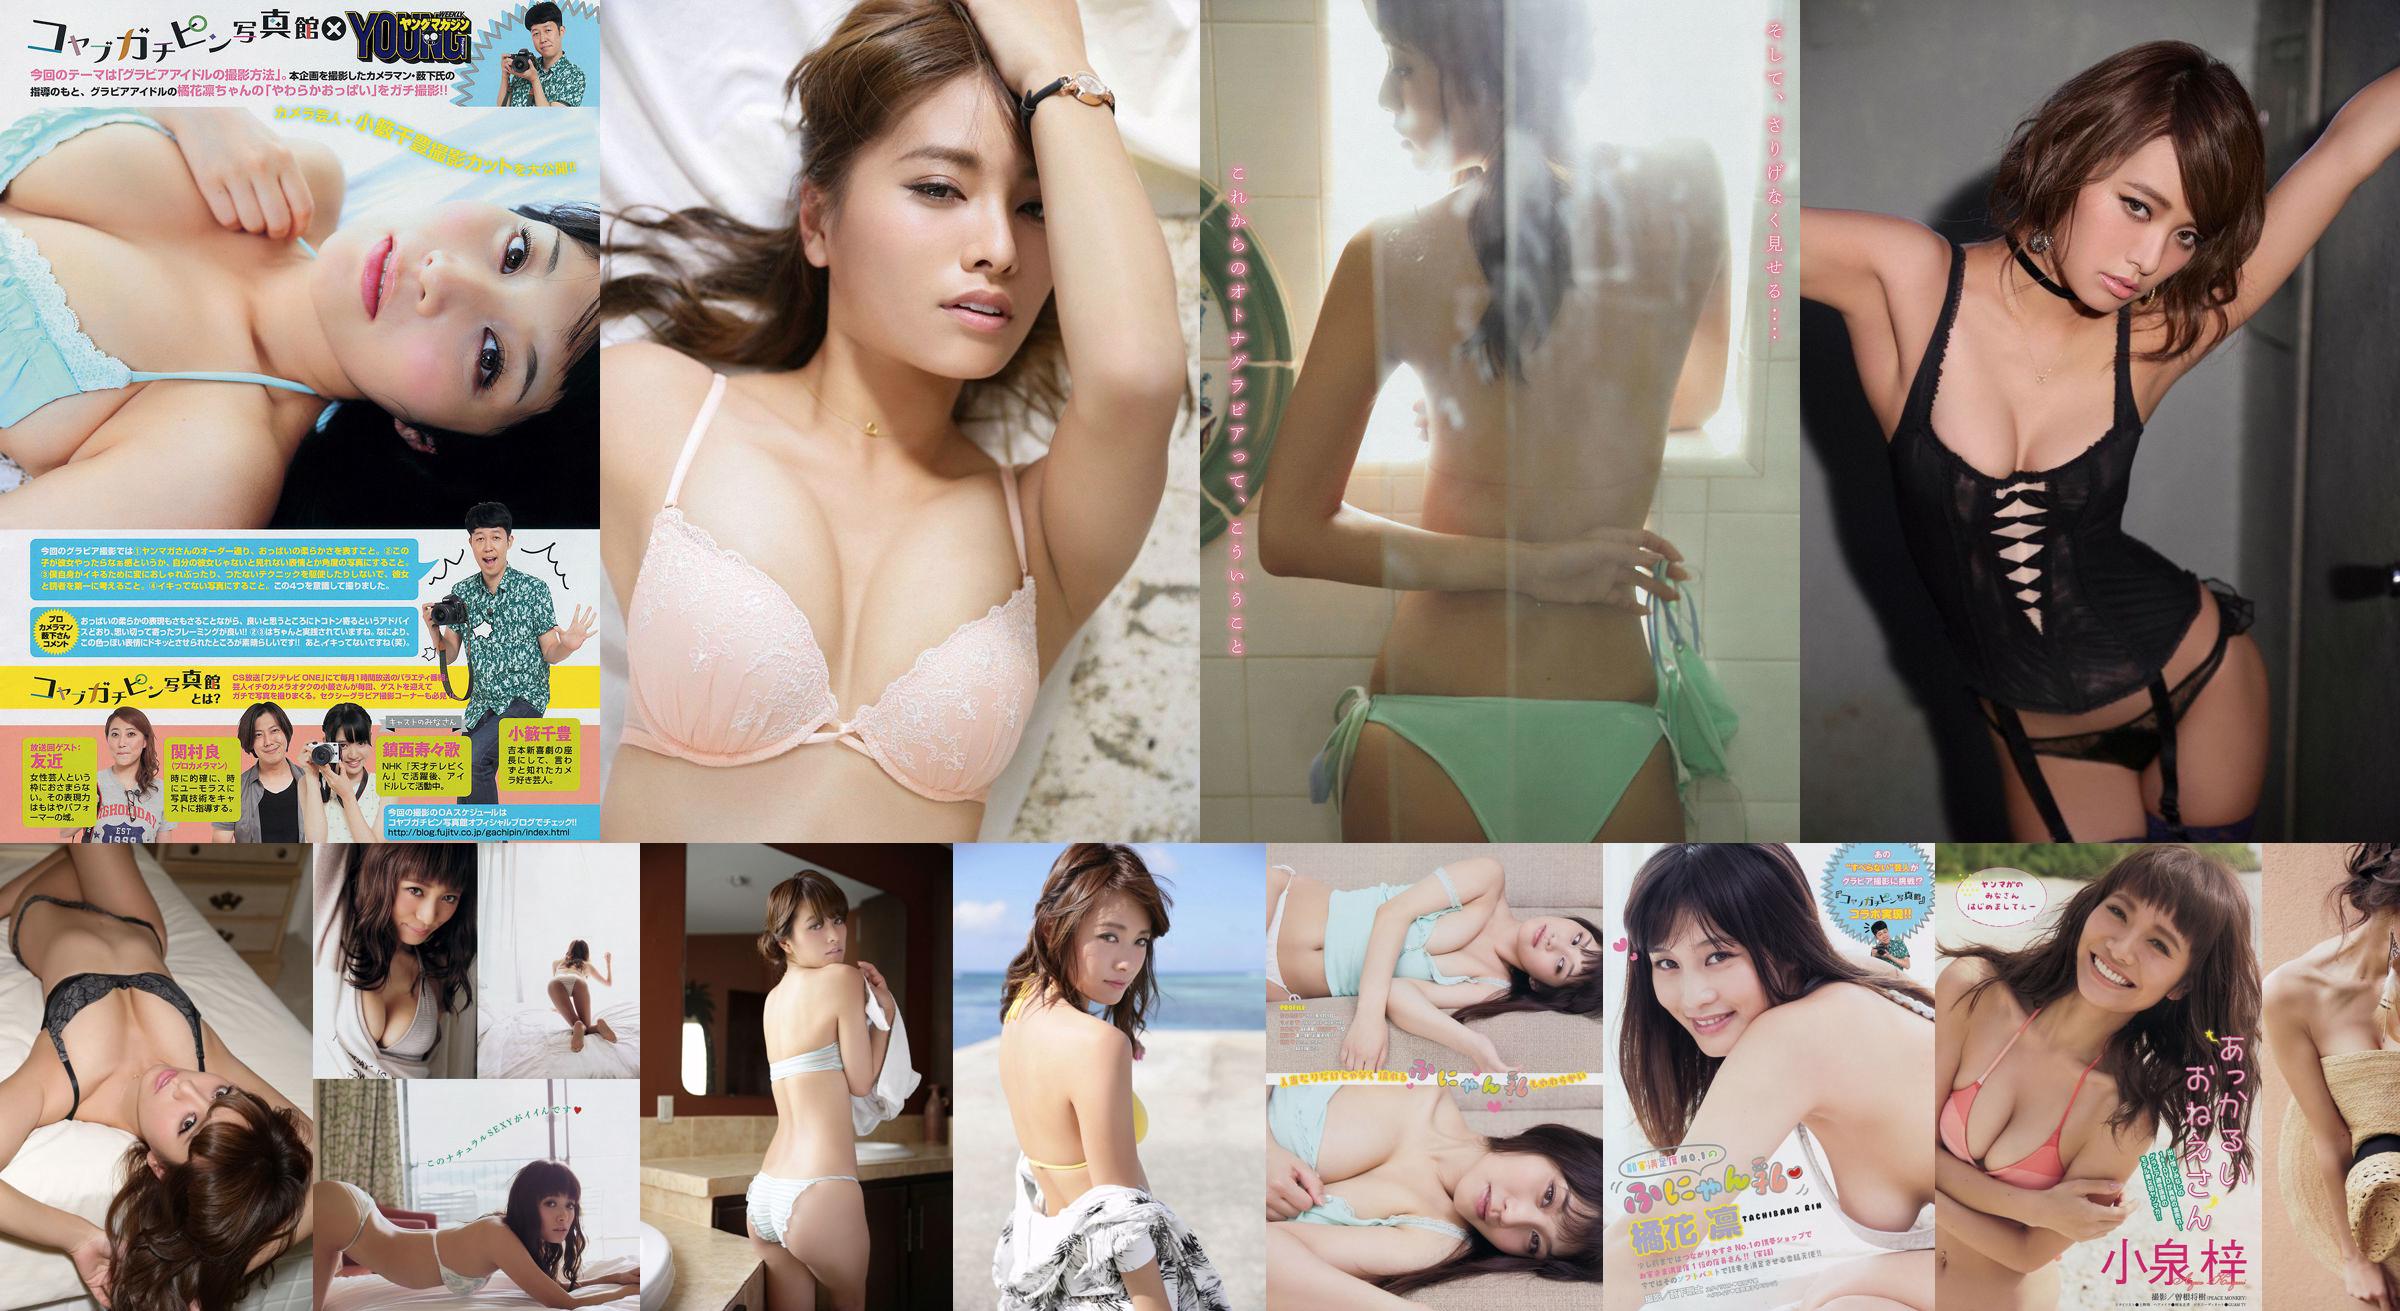 [Young Magazine] Azusa Koizumi Tachibana Rin 2014 No.43 Photo Magazine No.f1392c Pagina 1